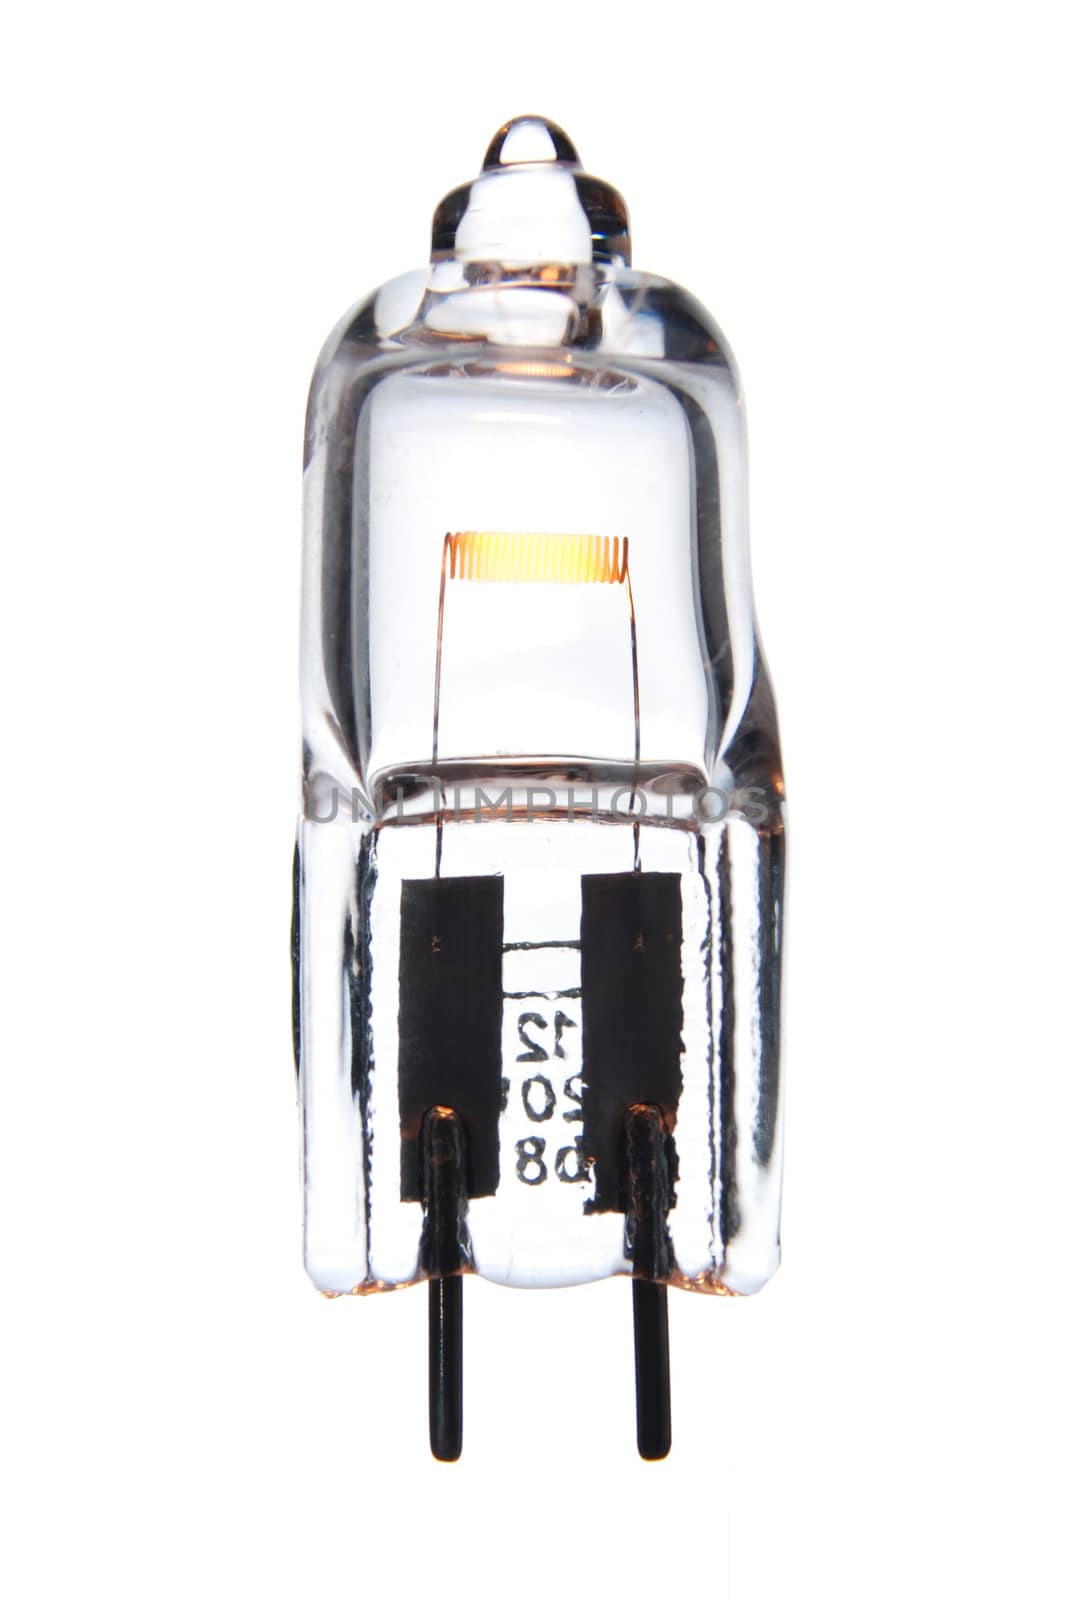 Halogen light bulb isolated on white. by Gjermund